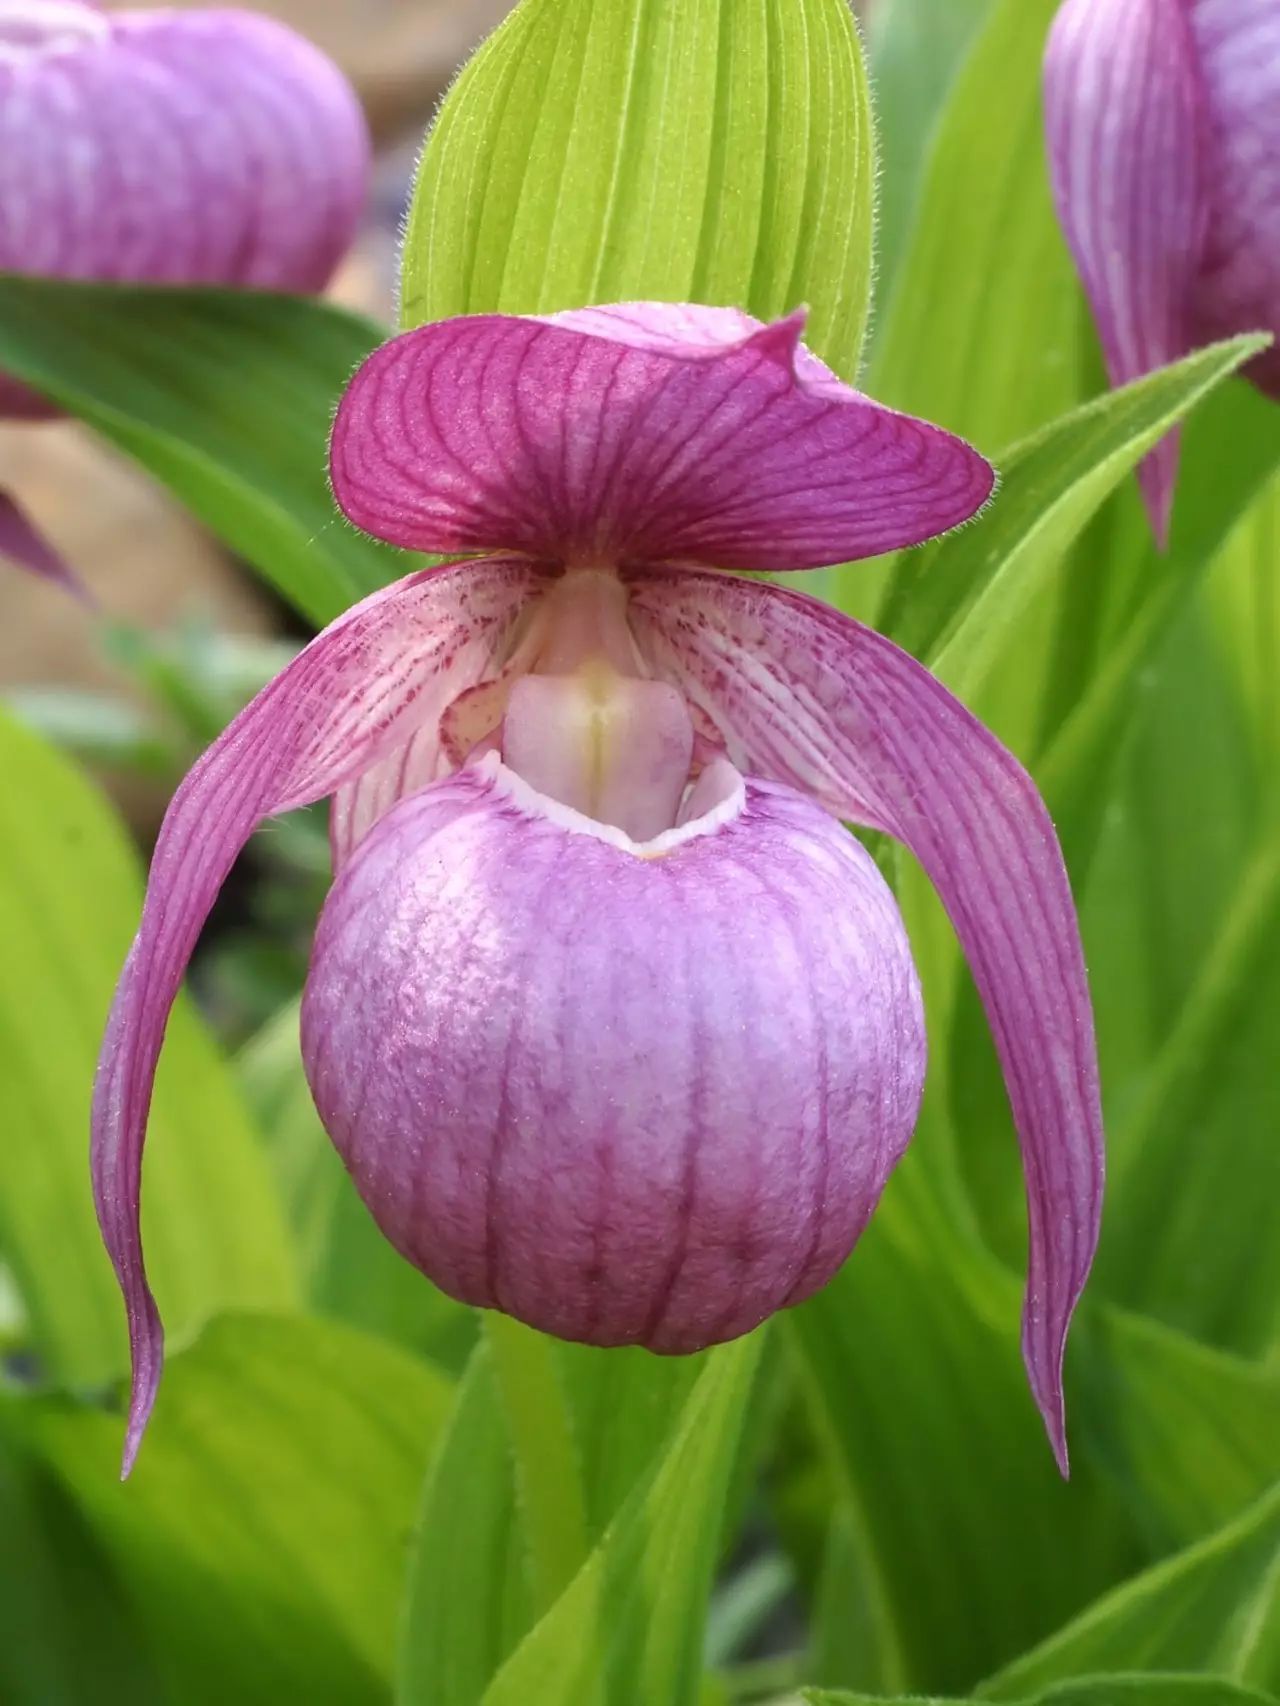 《北京植物志》上记录的三种杓兰属植物:大花杓兰,紫点杓兰